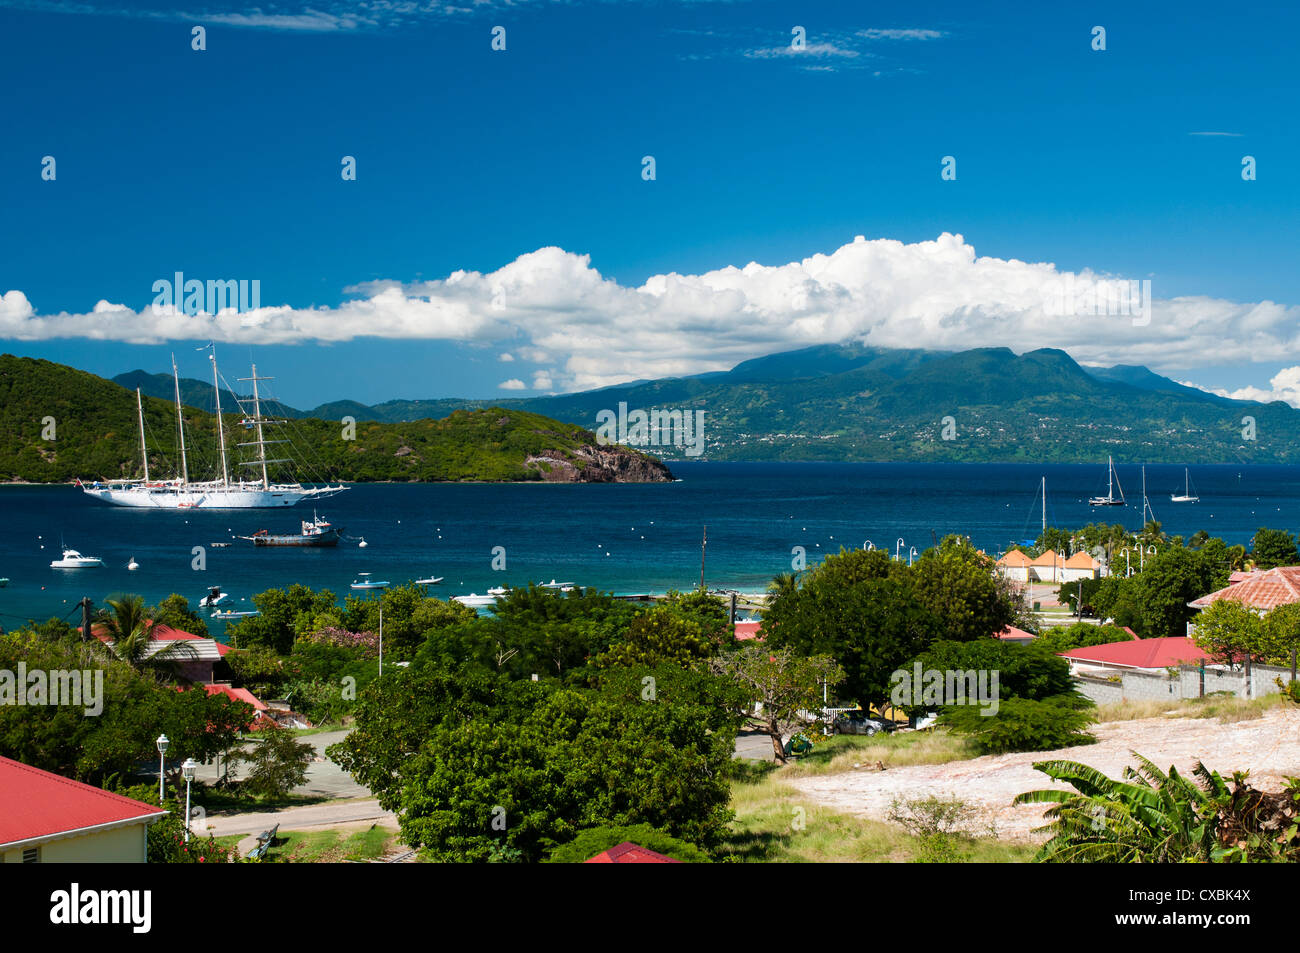 Le Bourg, Iles des Saintes, Terre de Haut, Guadeloupe, Westindische Inseln, Französisch, Frankreich, Karibik Mittelamerika Stockfoto